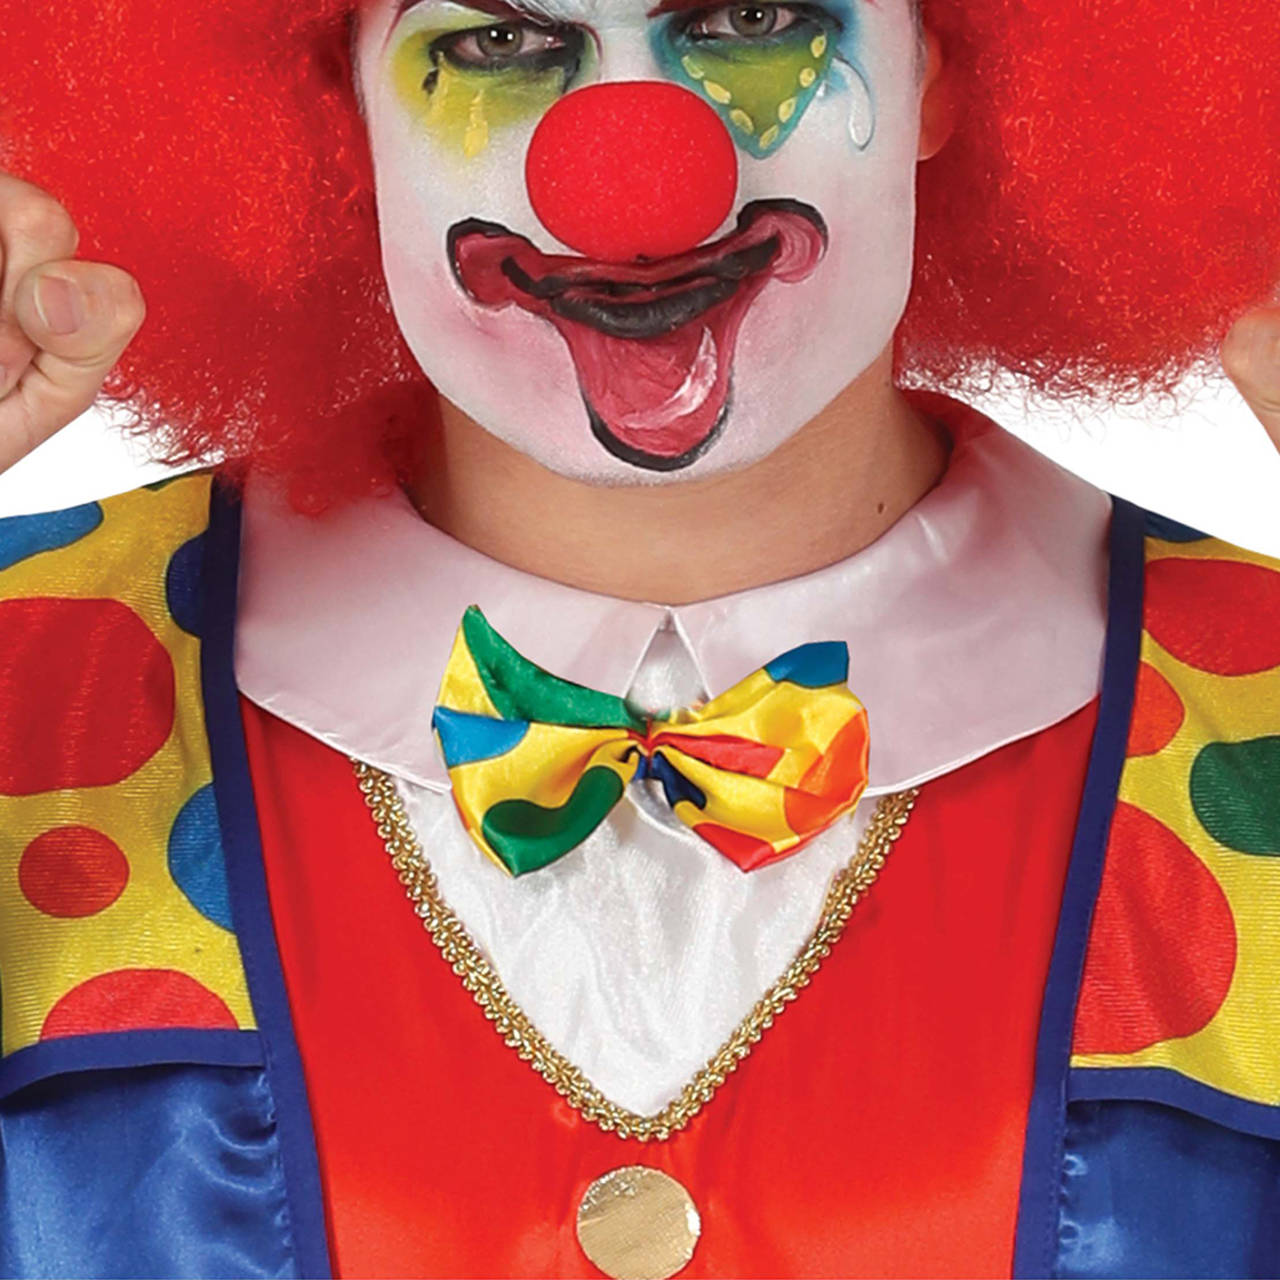 Acquista online il costume da Clown del Sorriso per adulto